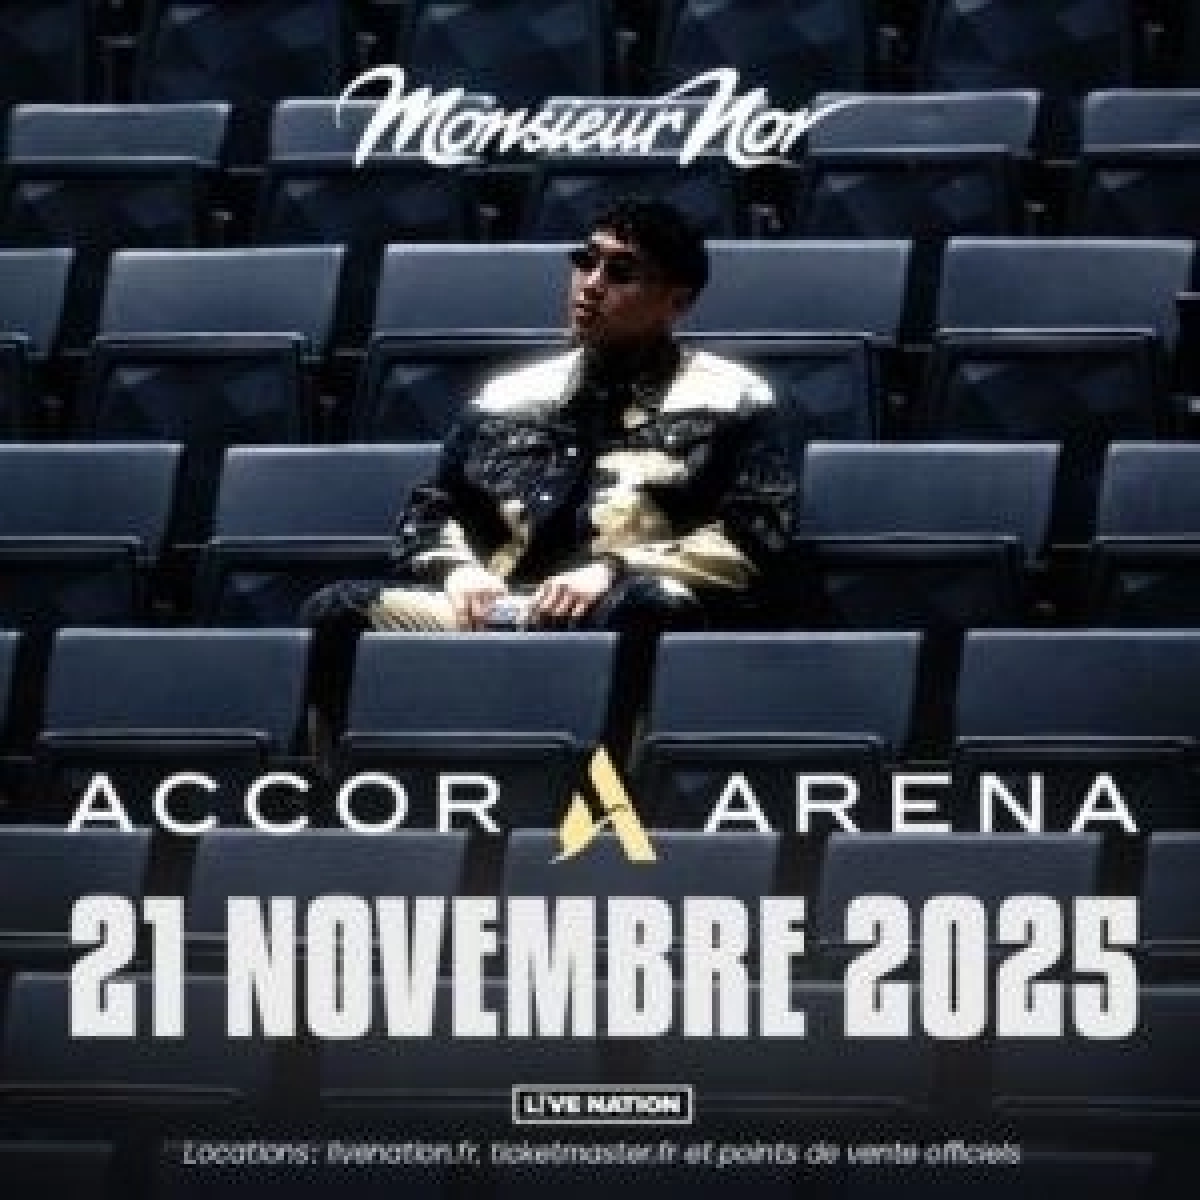 Monsieur Nov al Accor Arena Tickets